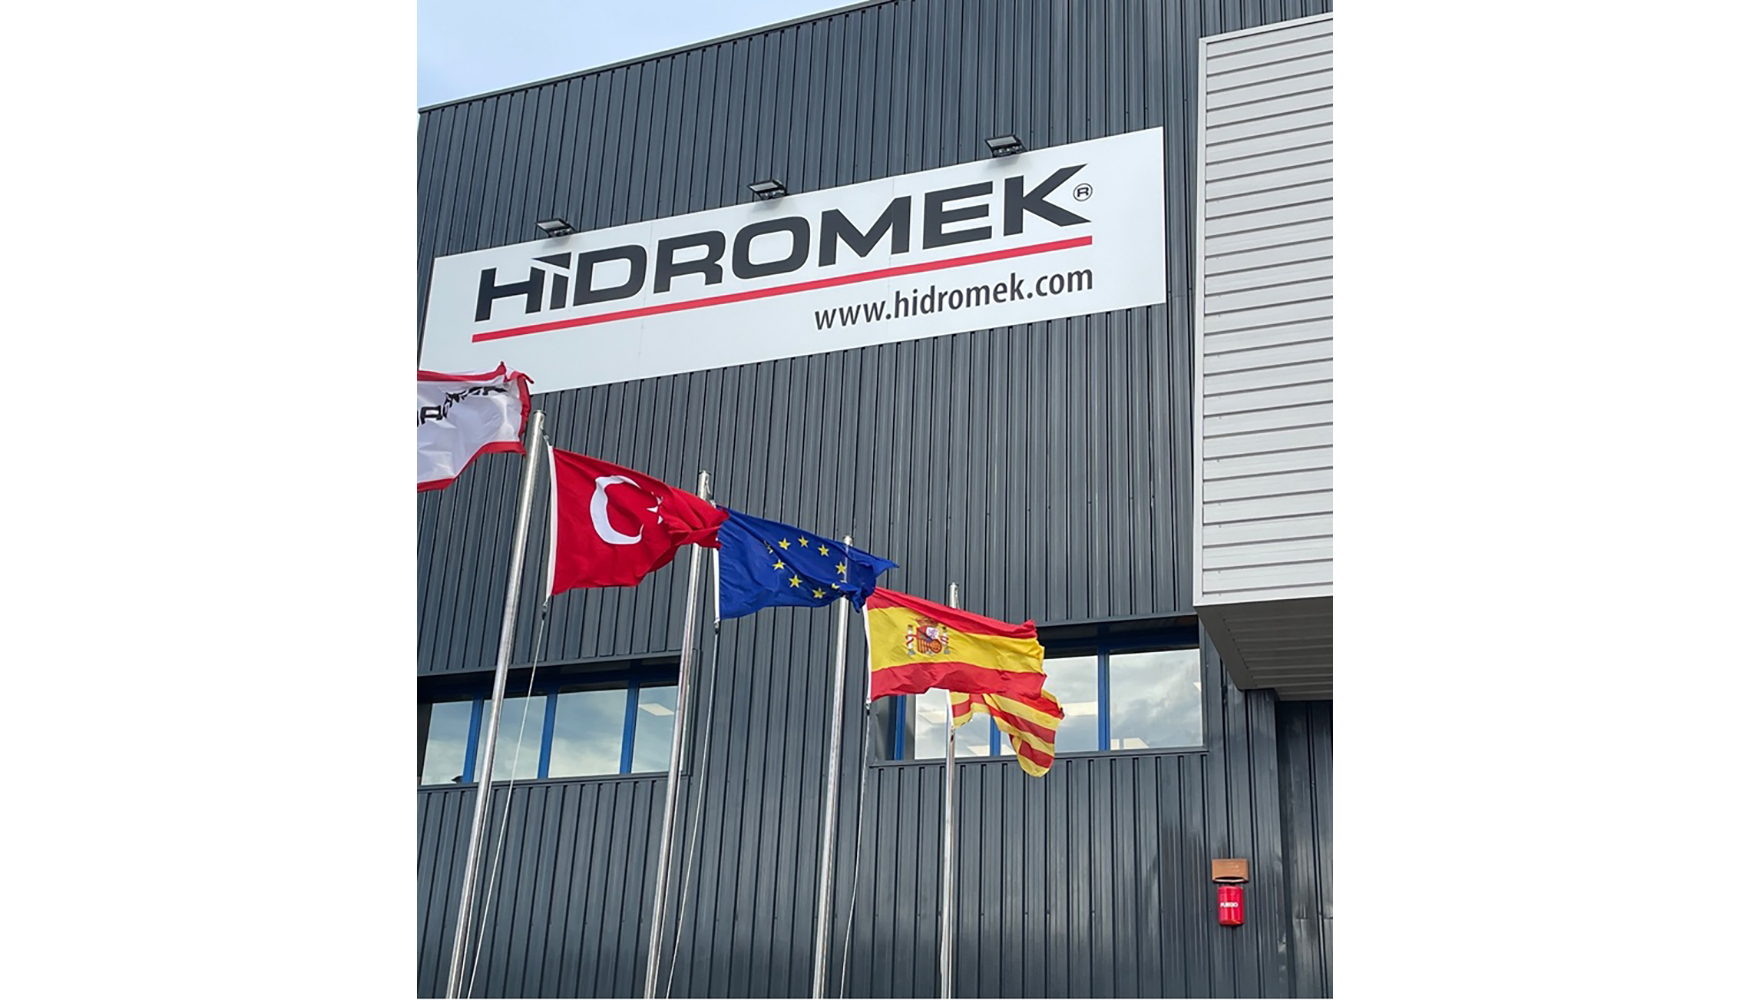 Las nuevas instalaciones de Hidromek en Viladecans cuentan con todo lo necesario para ofrecer el mejor servicio al cliente...